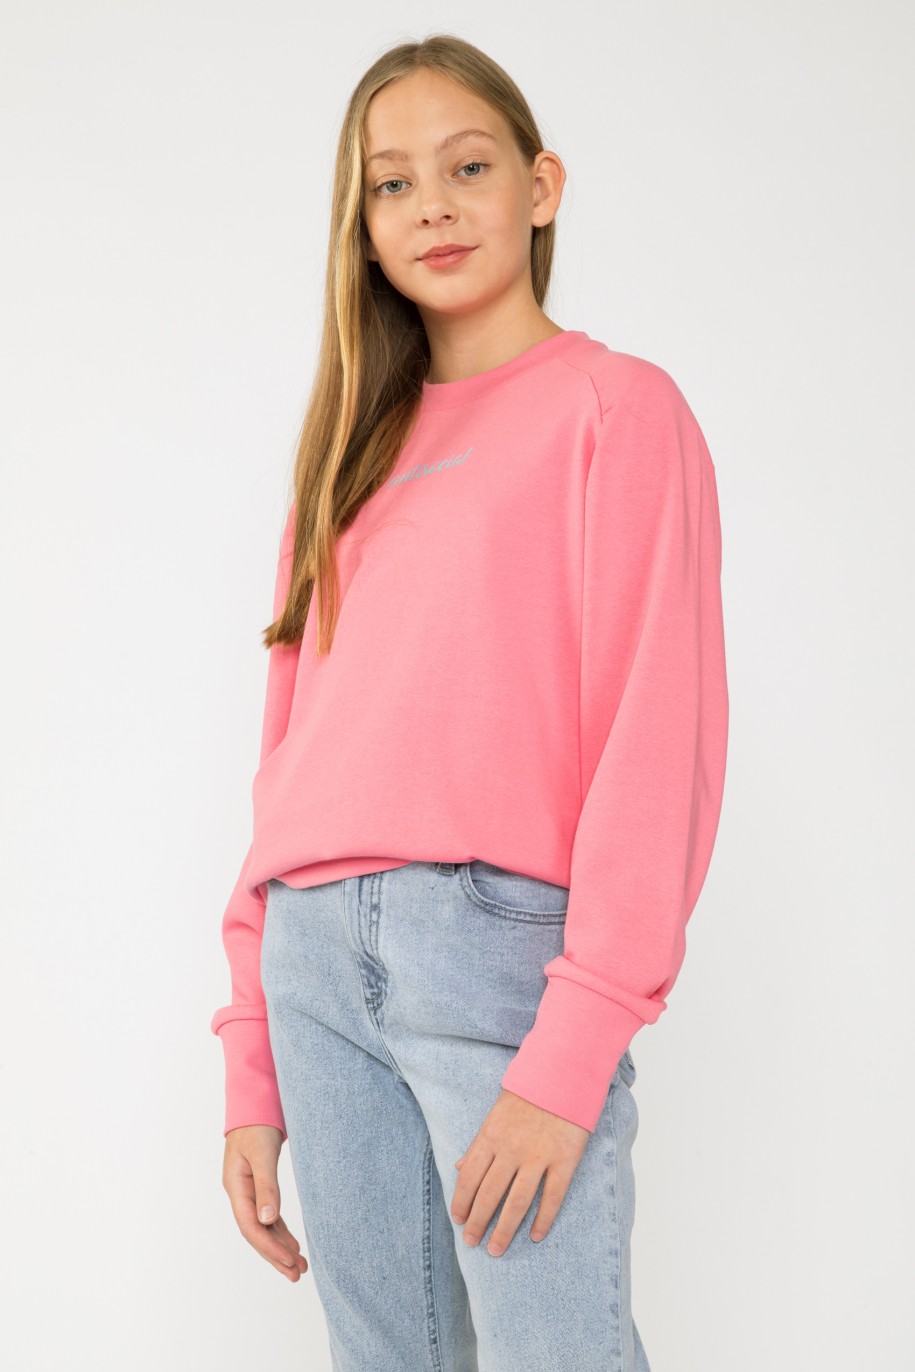 Różowa bluza dla dziewczyny - 33075